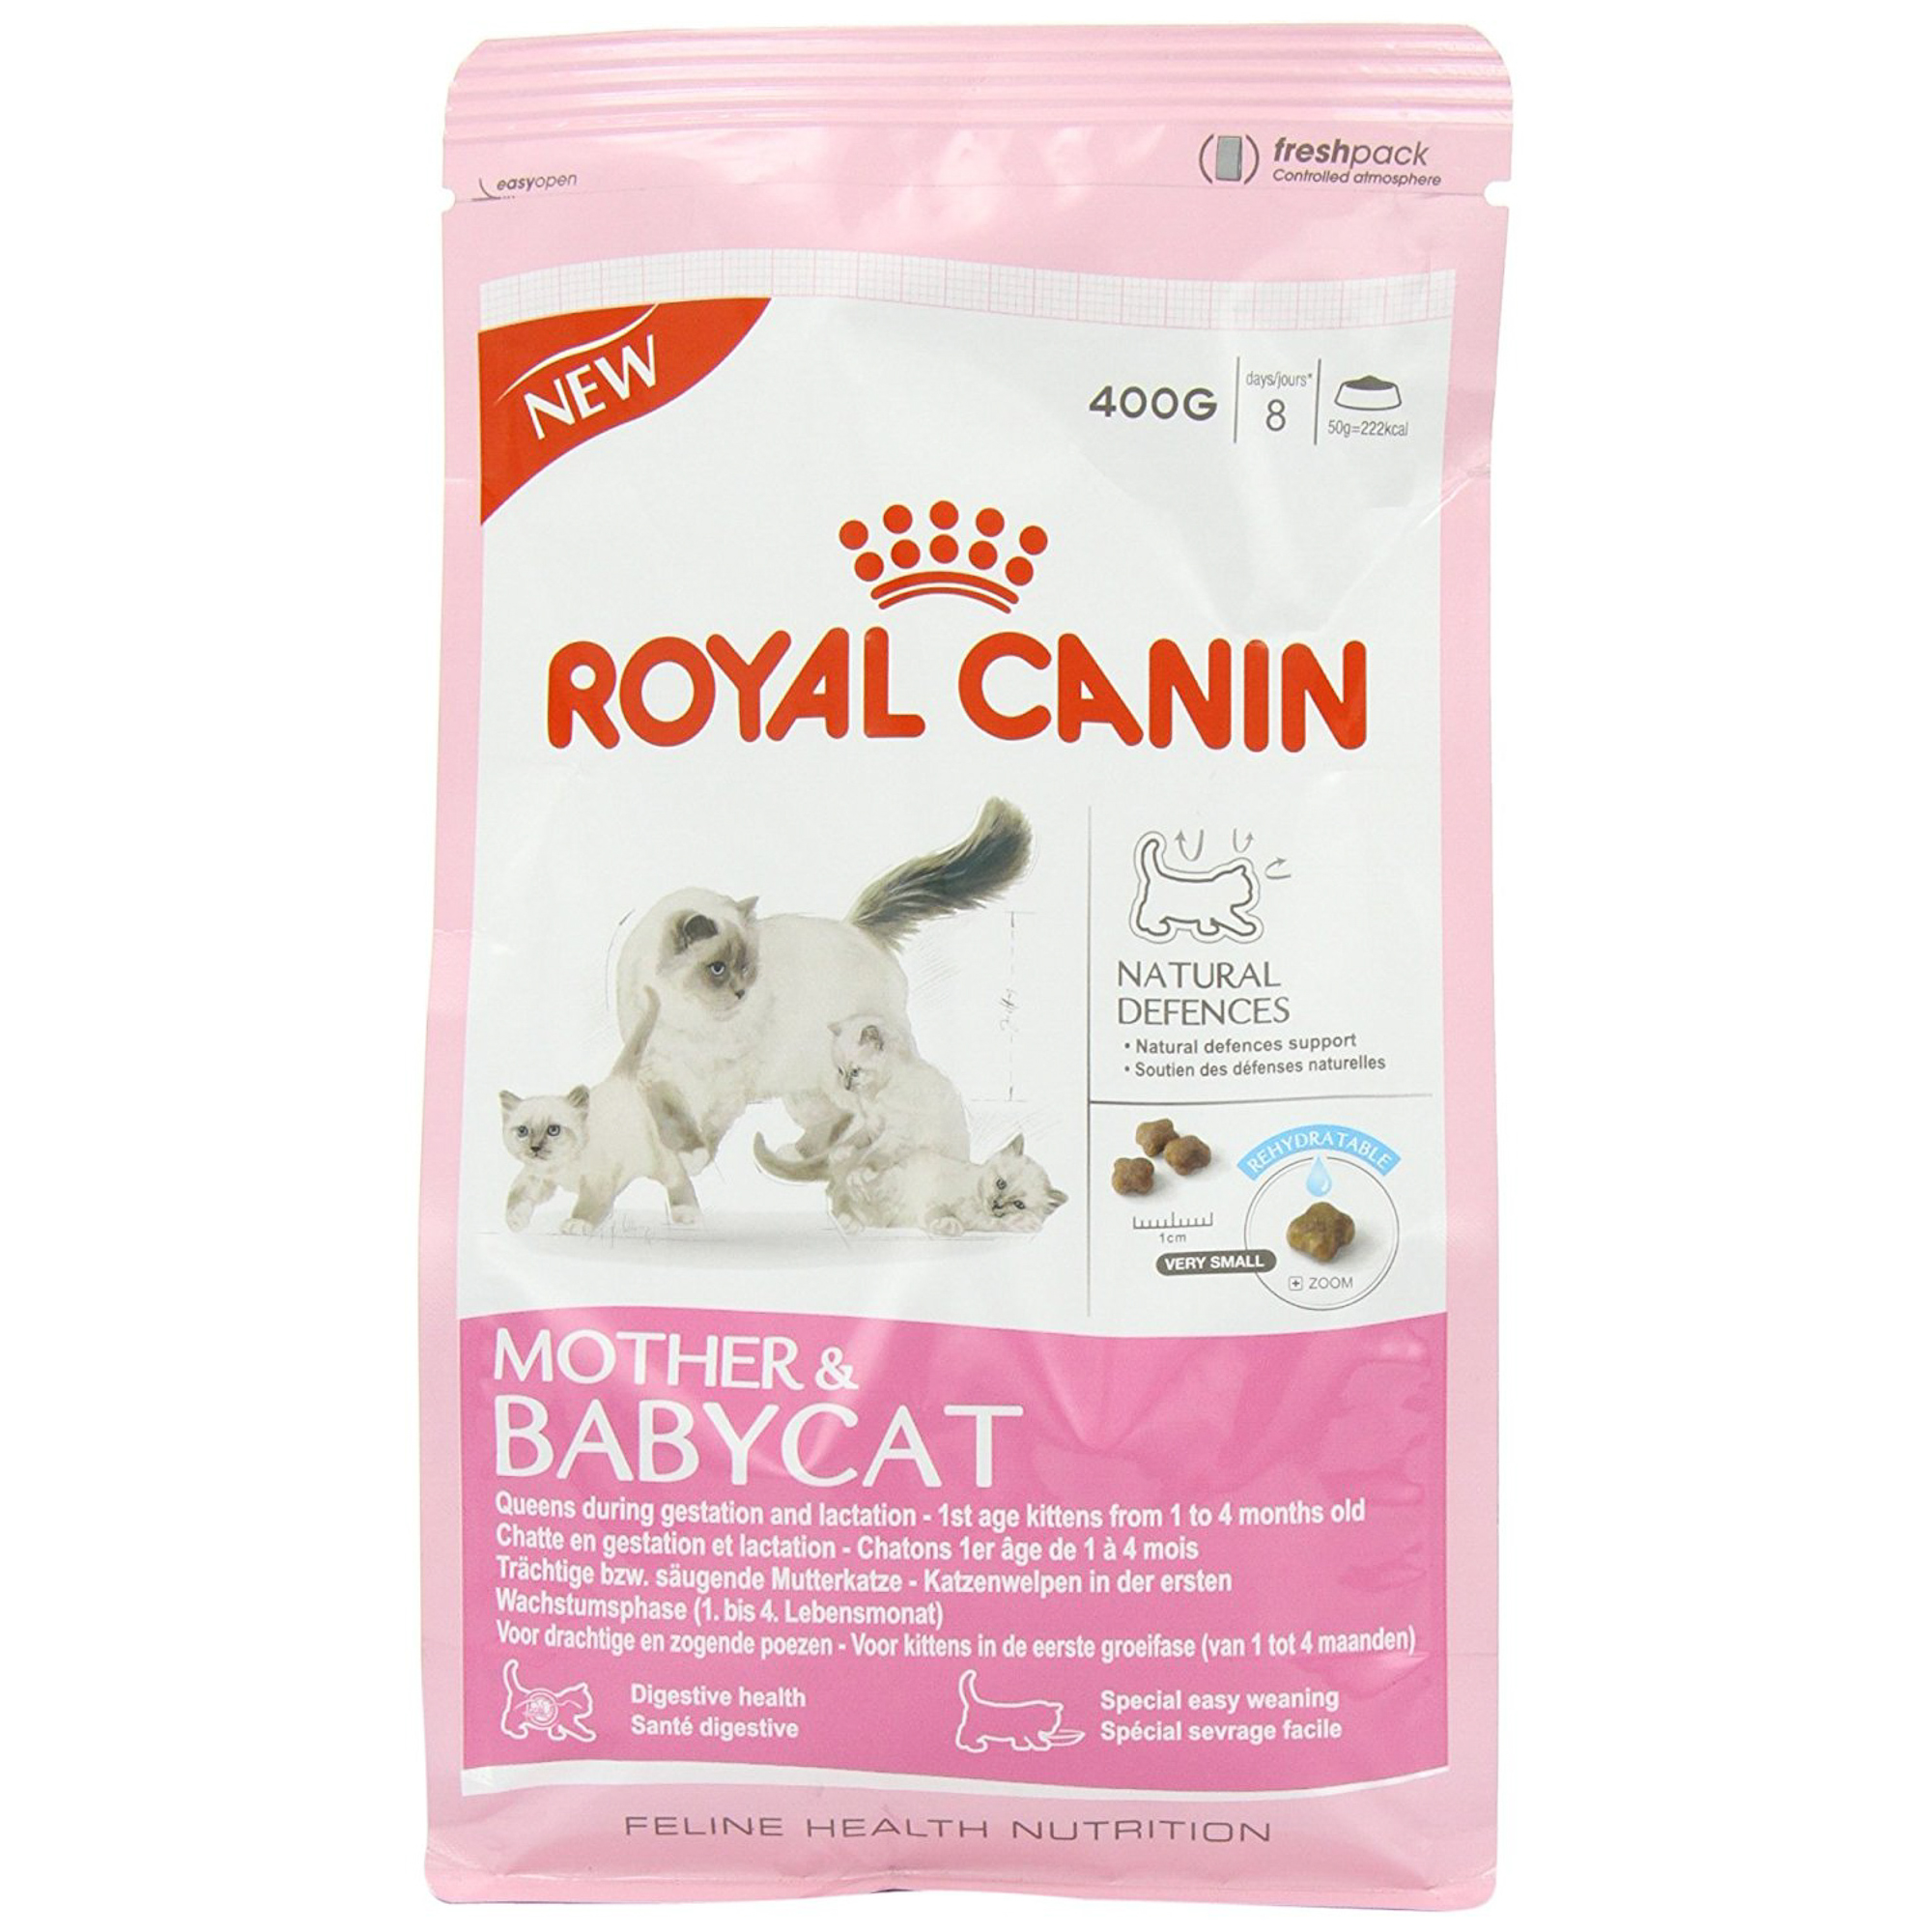 Корм для кошек ROYAL CANIN Mother & Babycat для котят в возрасте от 1 до 4-х месяцев, беременных и лактирующих кошек, 400г корм для кошек royal canin hair